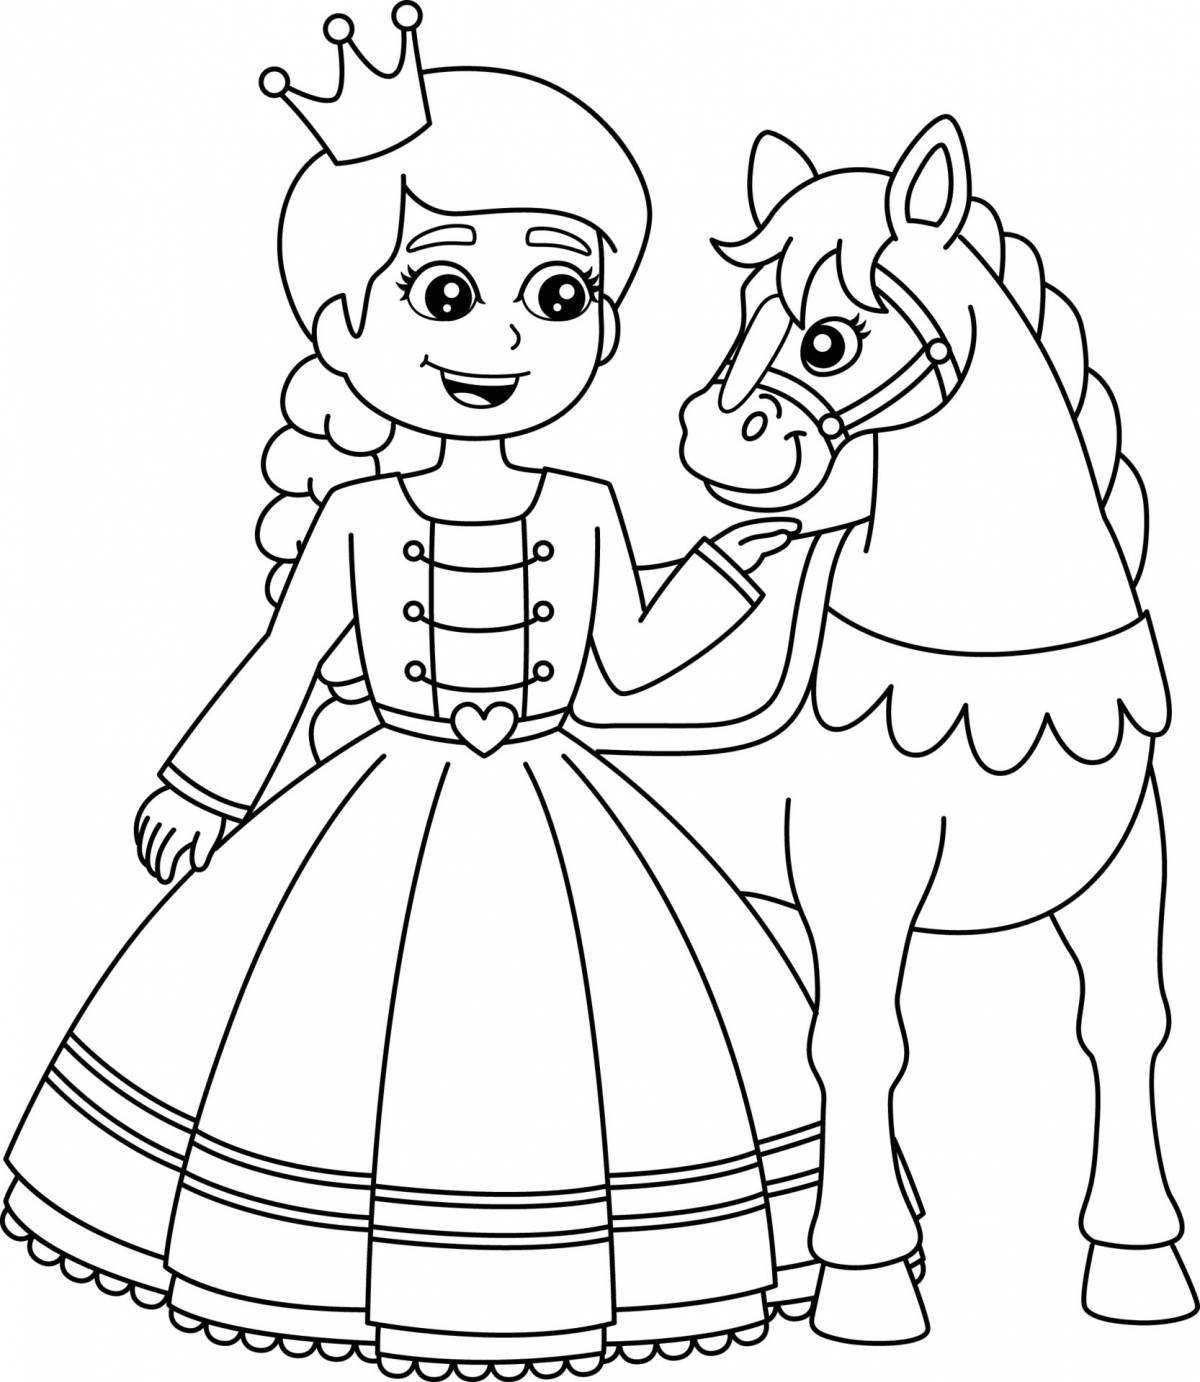 Веселая раскраска лошадь и принцесса